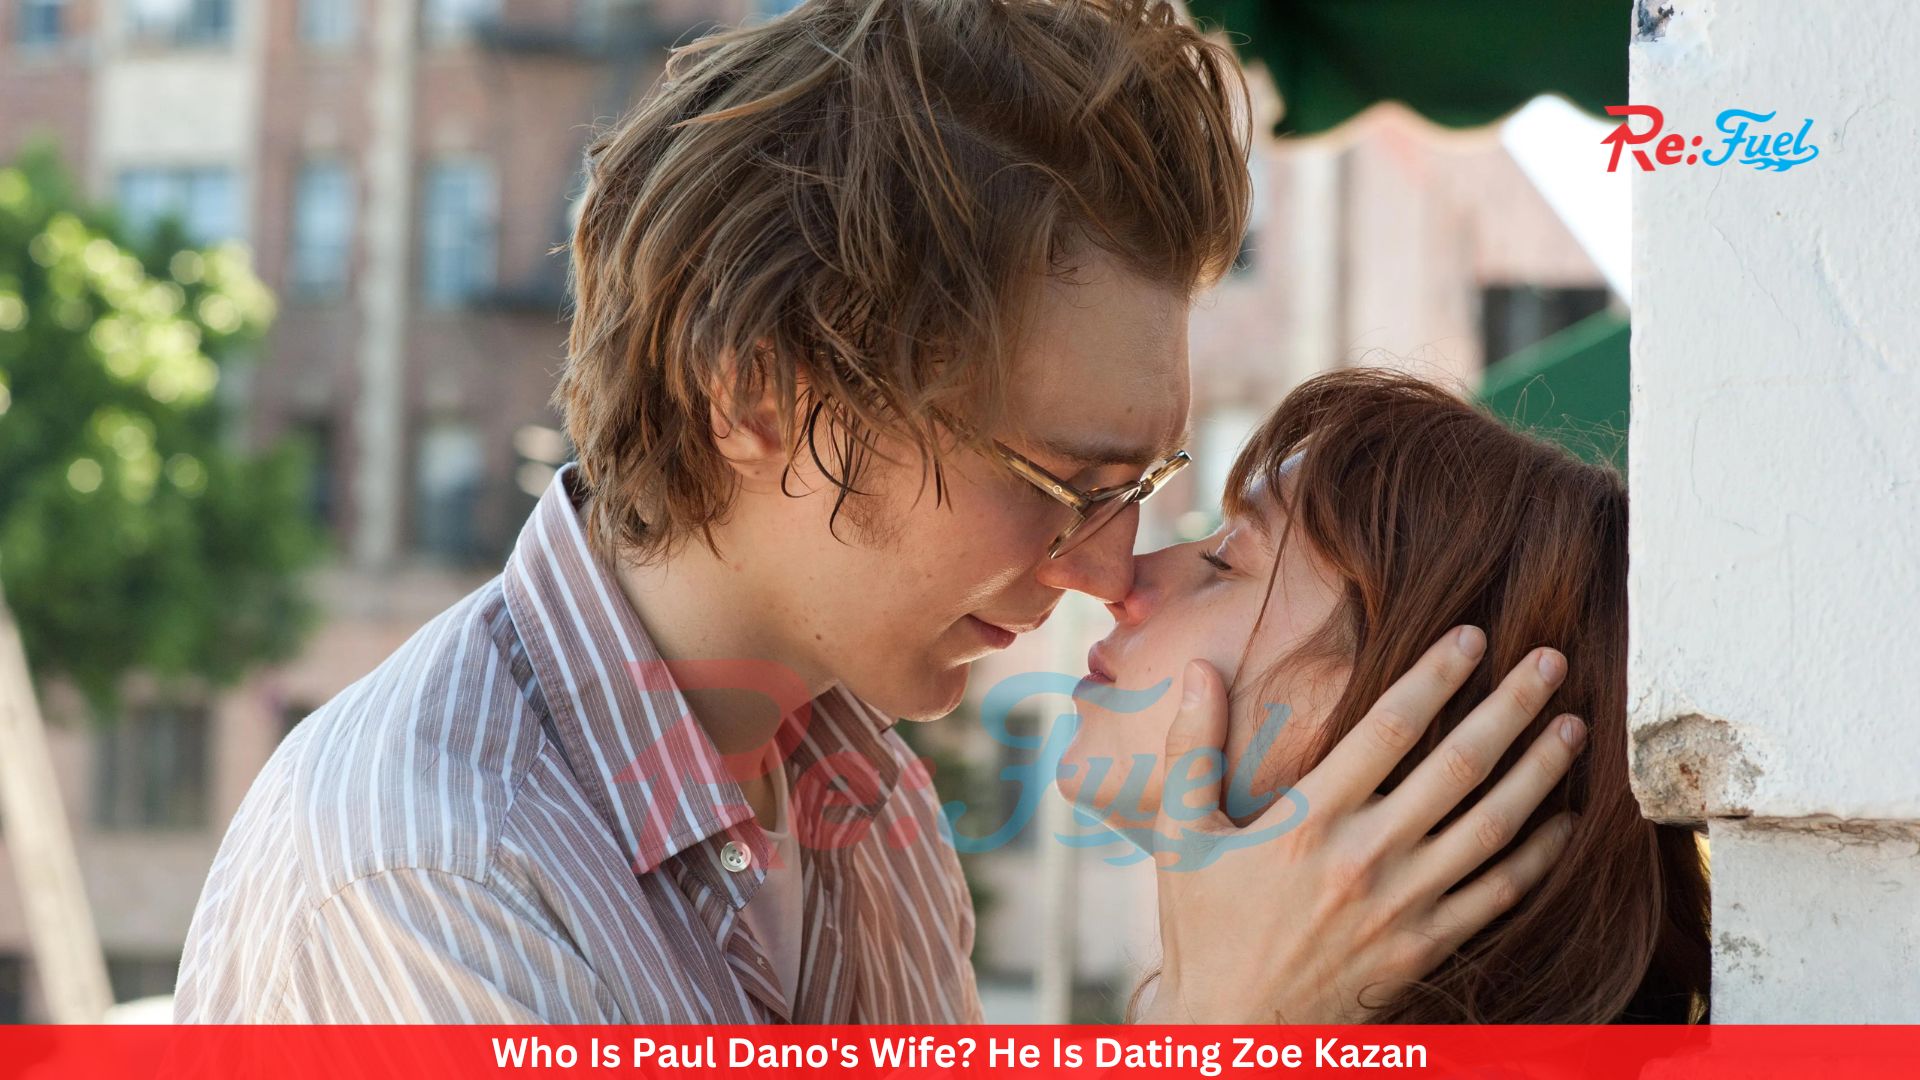 Who Is Paul Dano's Wife? He Is Dating Zoe Kazan